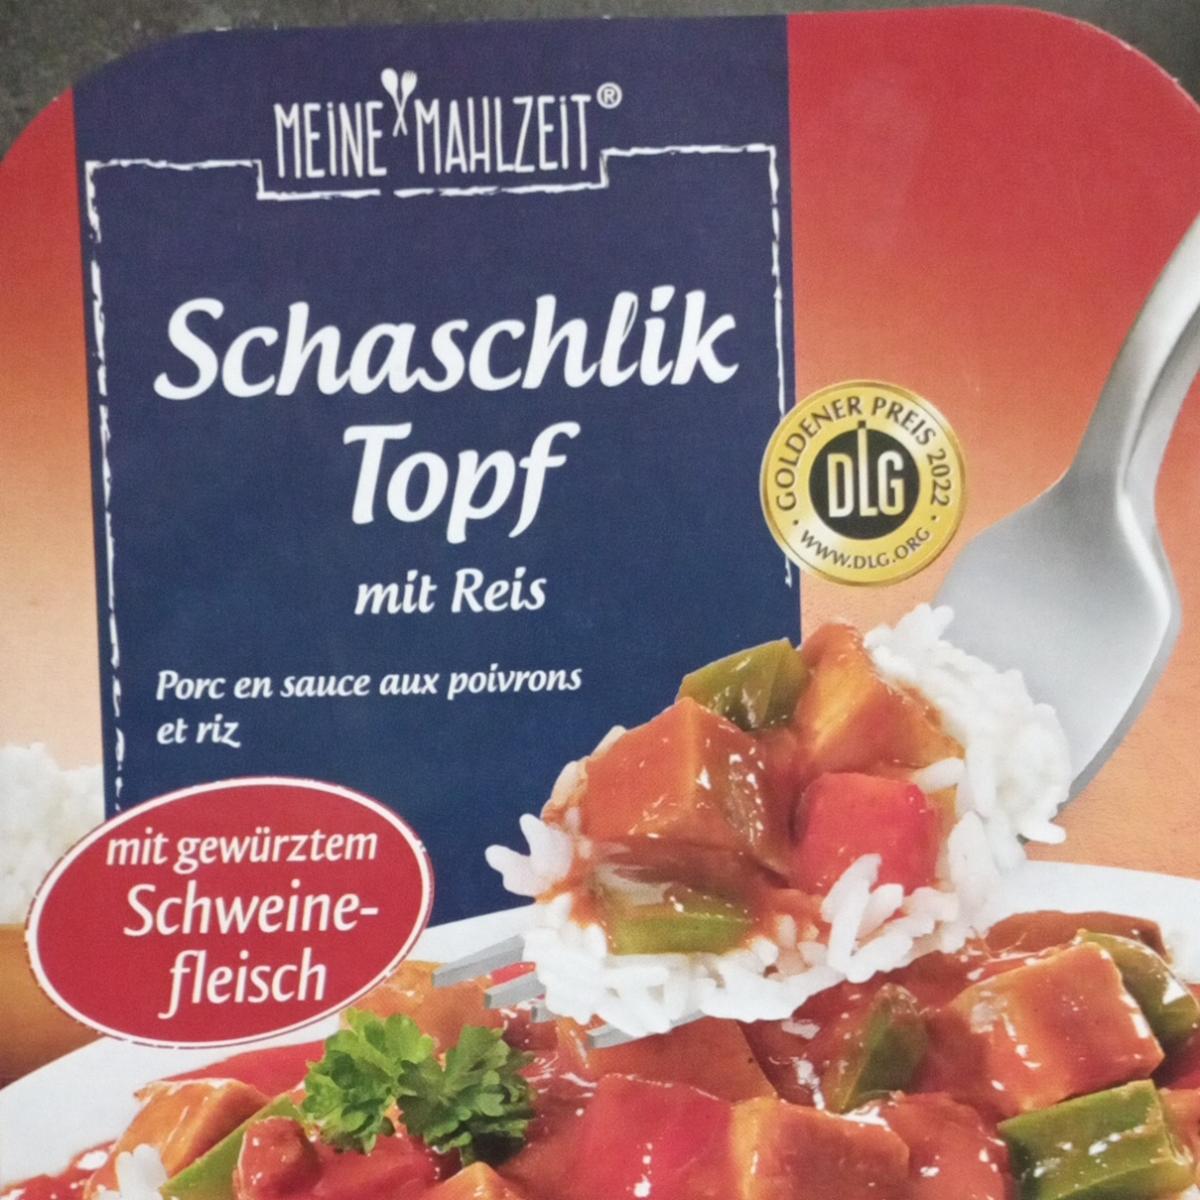 Fotografie - Schaschlik Topf mit Reis Meine Mahlzeit